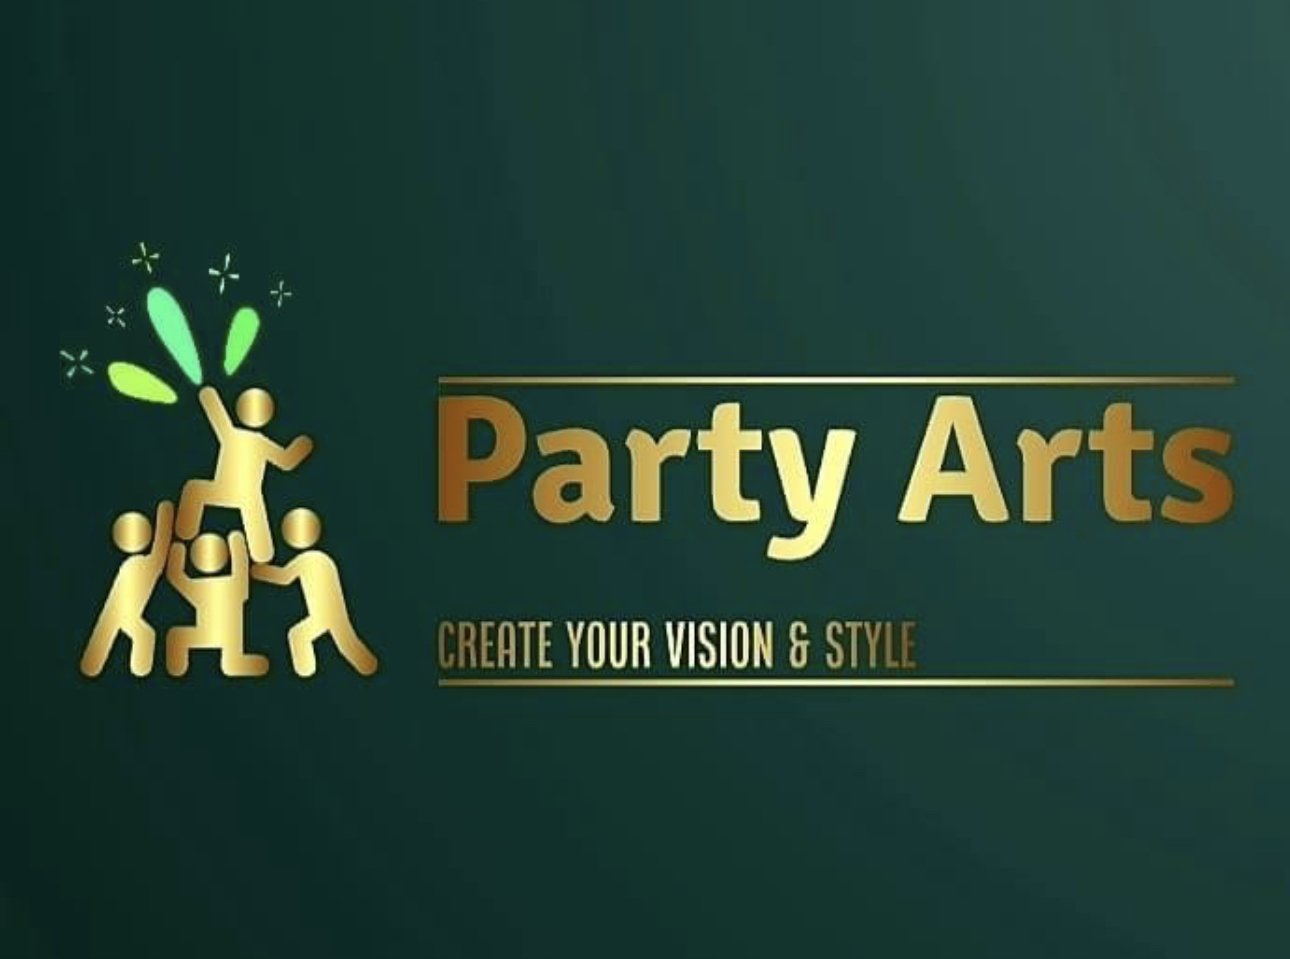 Party Arts